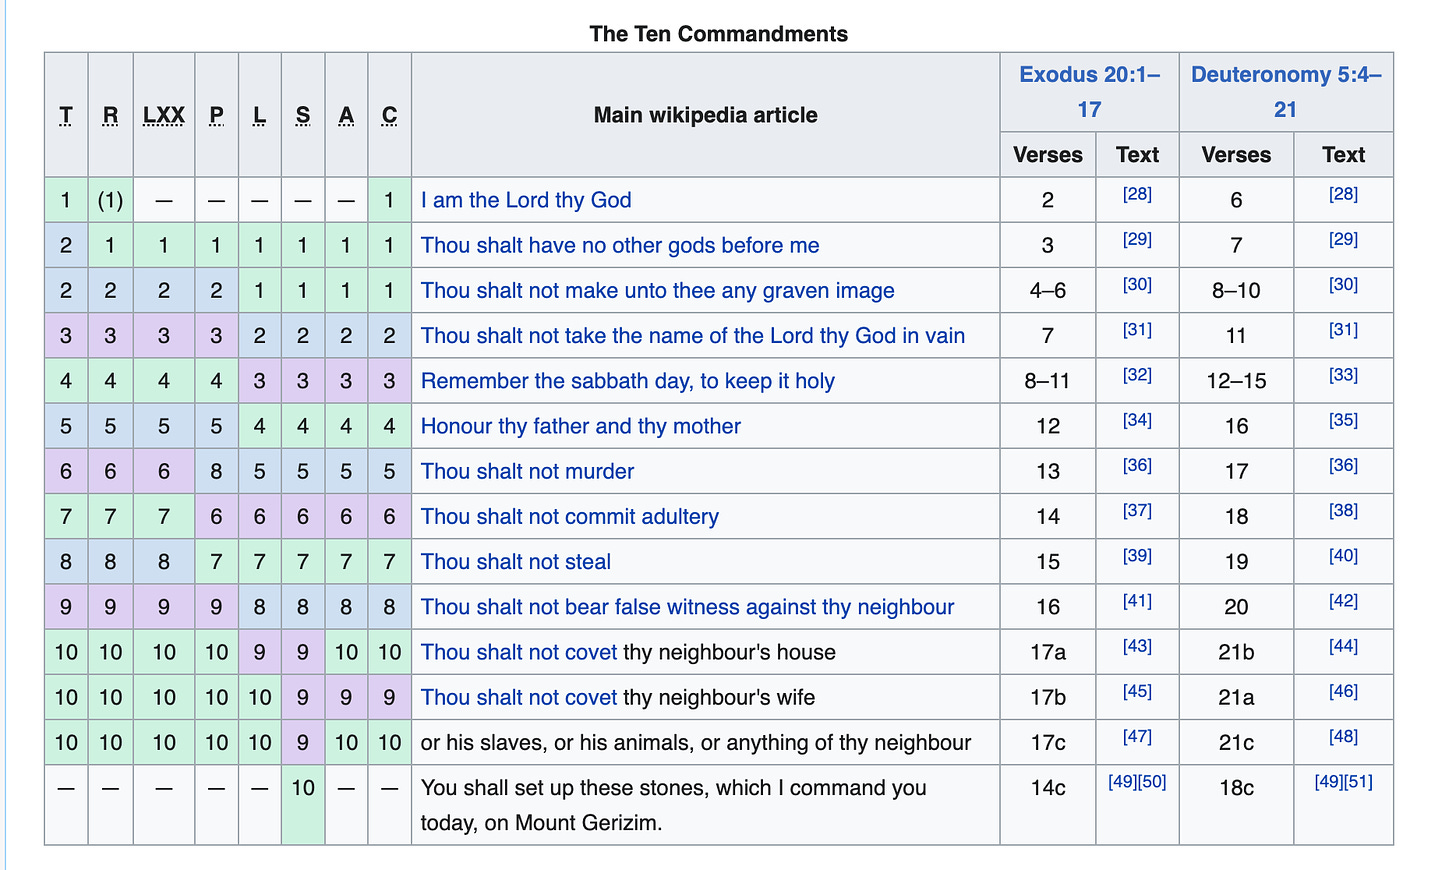 https://en.wikipedia.org/wiki/Ten_Commandments#Numbering